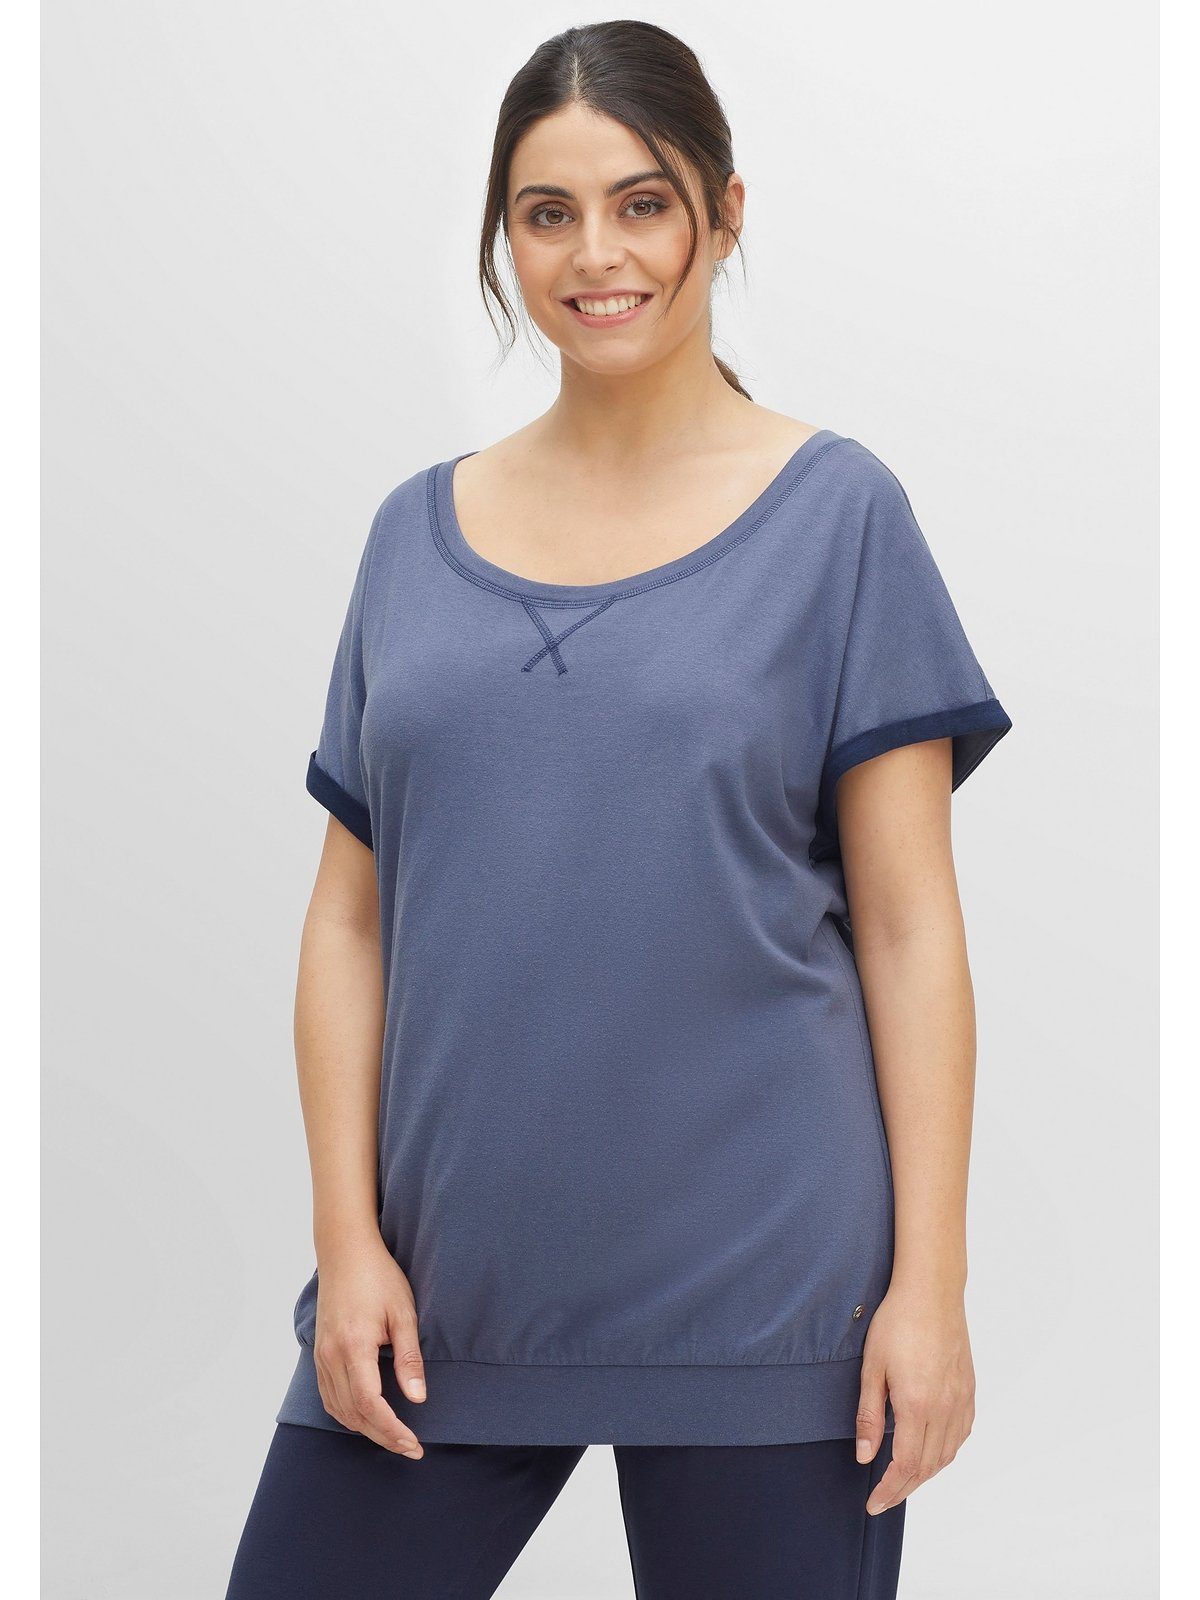 Sheego T-Shirt Große Größen weicher, Interlockqualität aus pflegeleichter